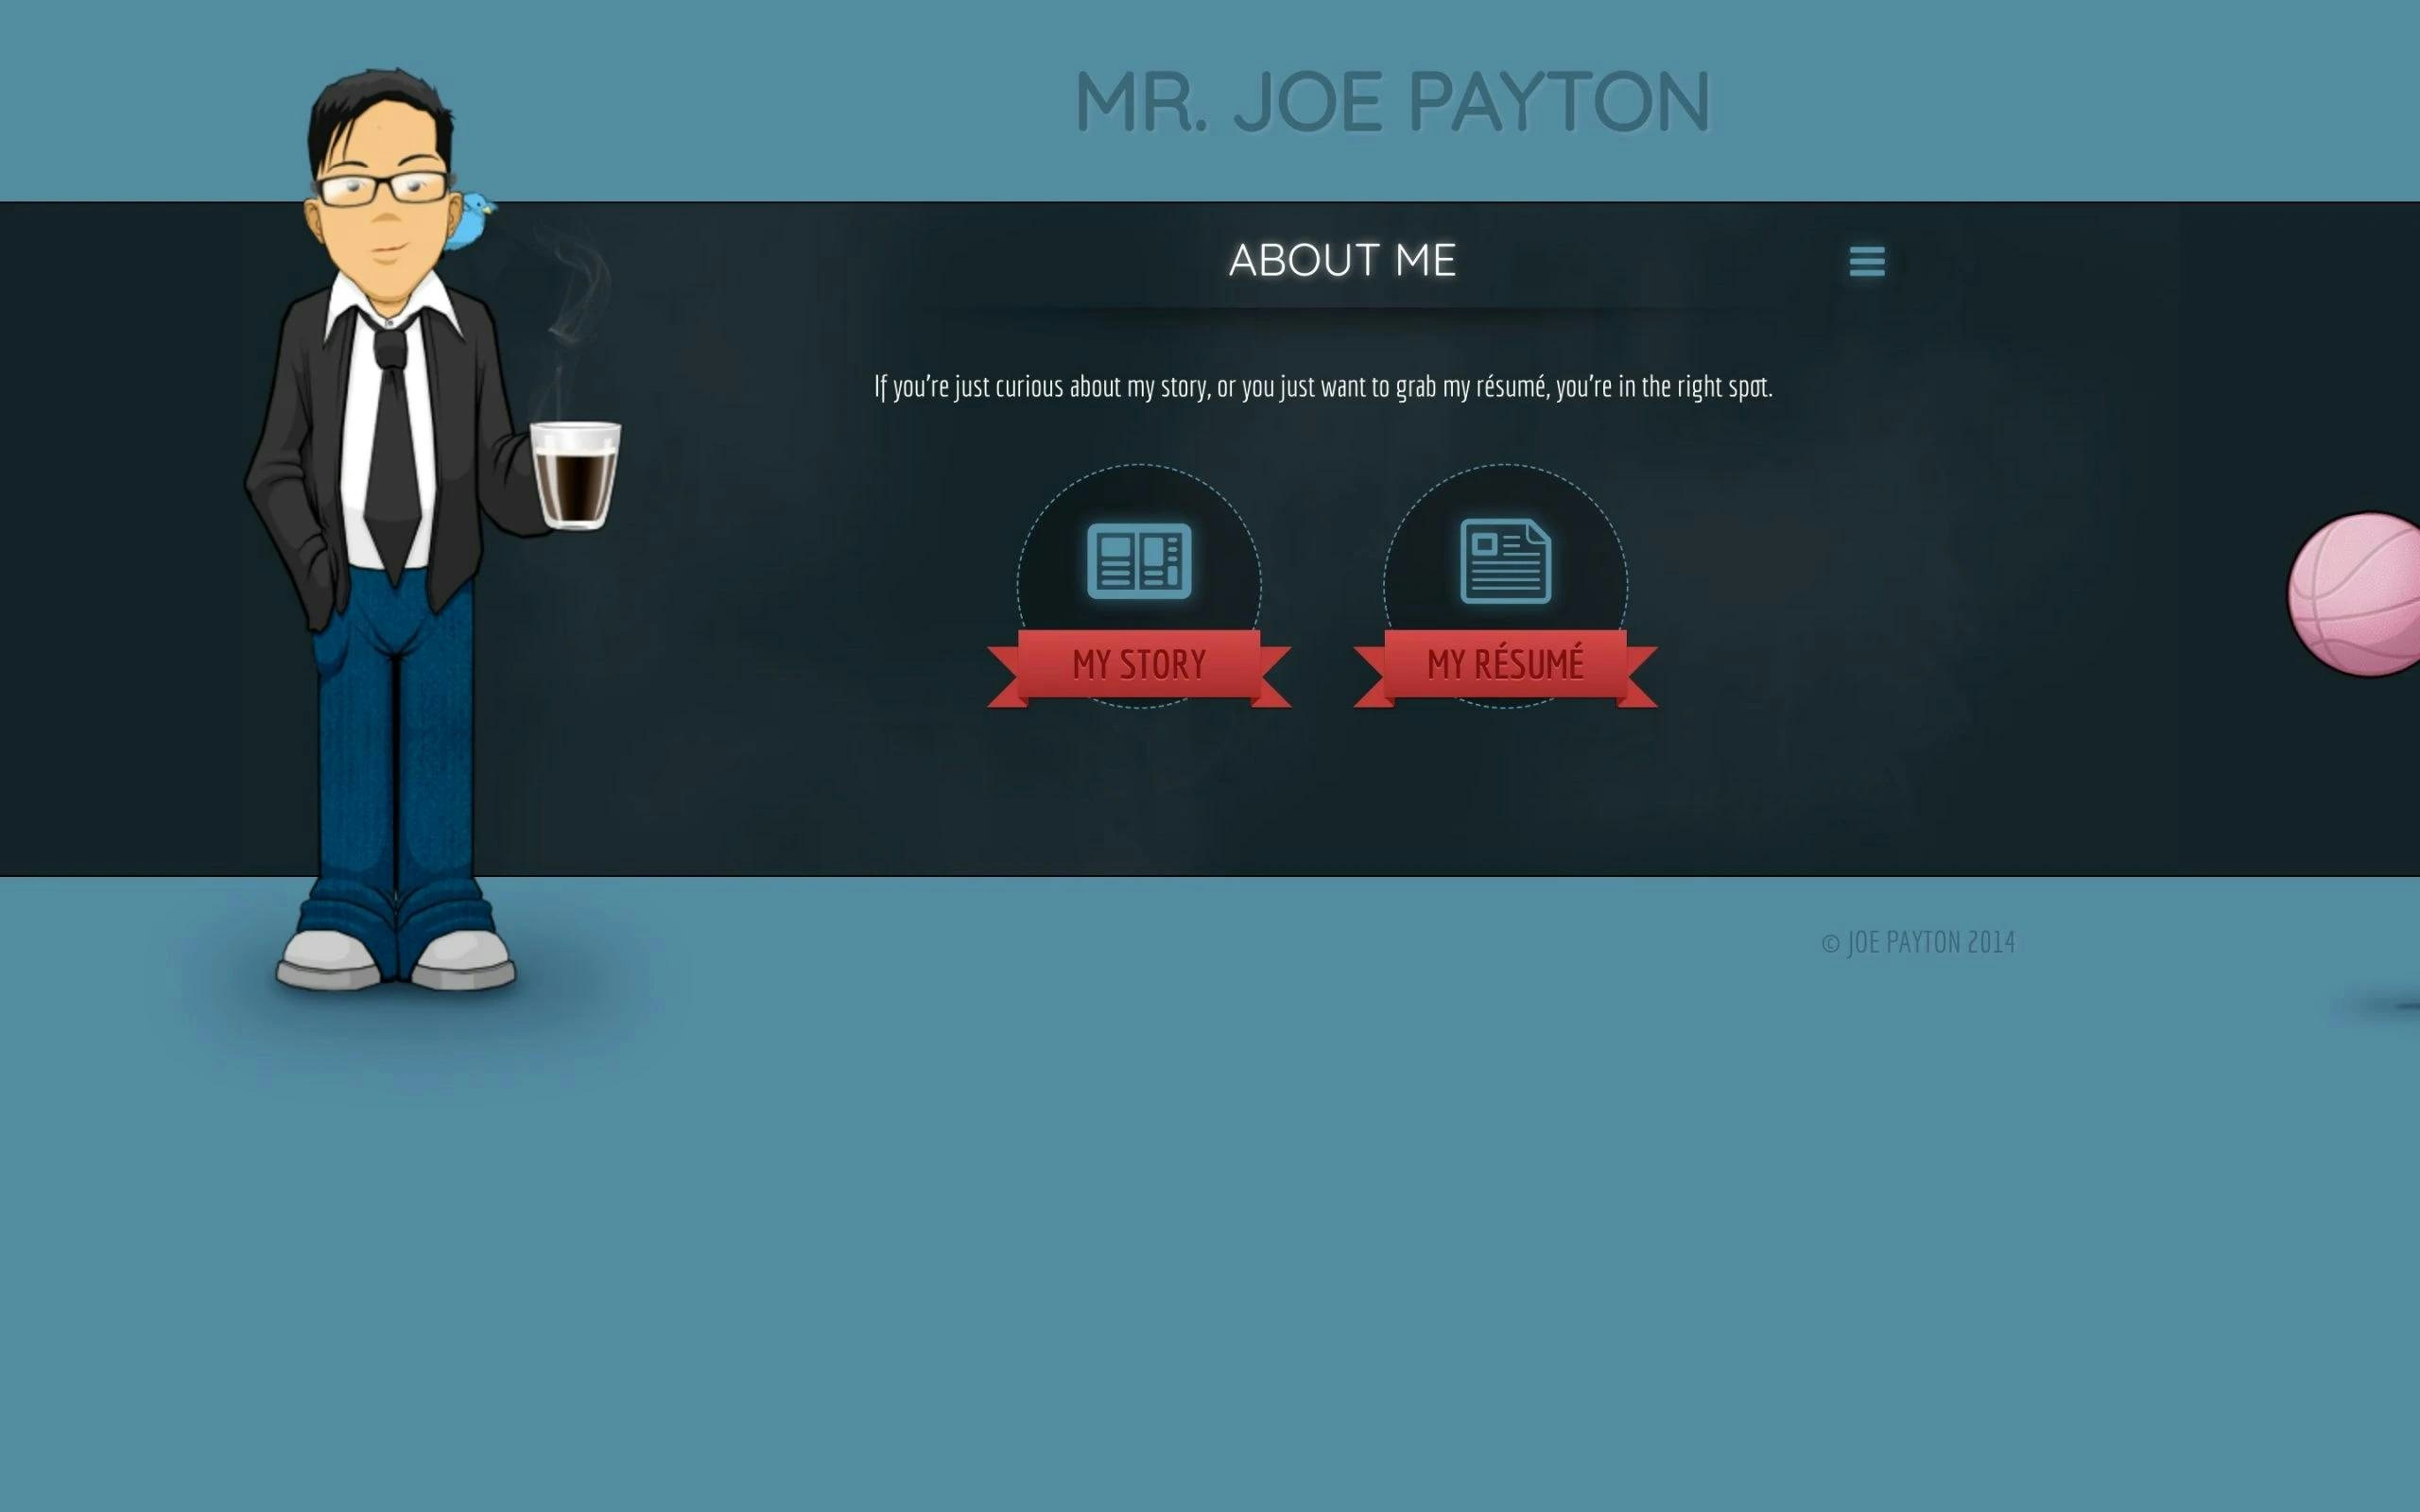 Joe Payton about me page